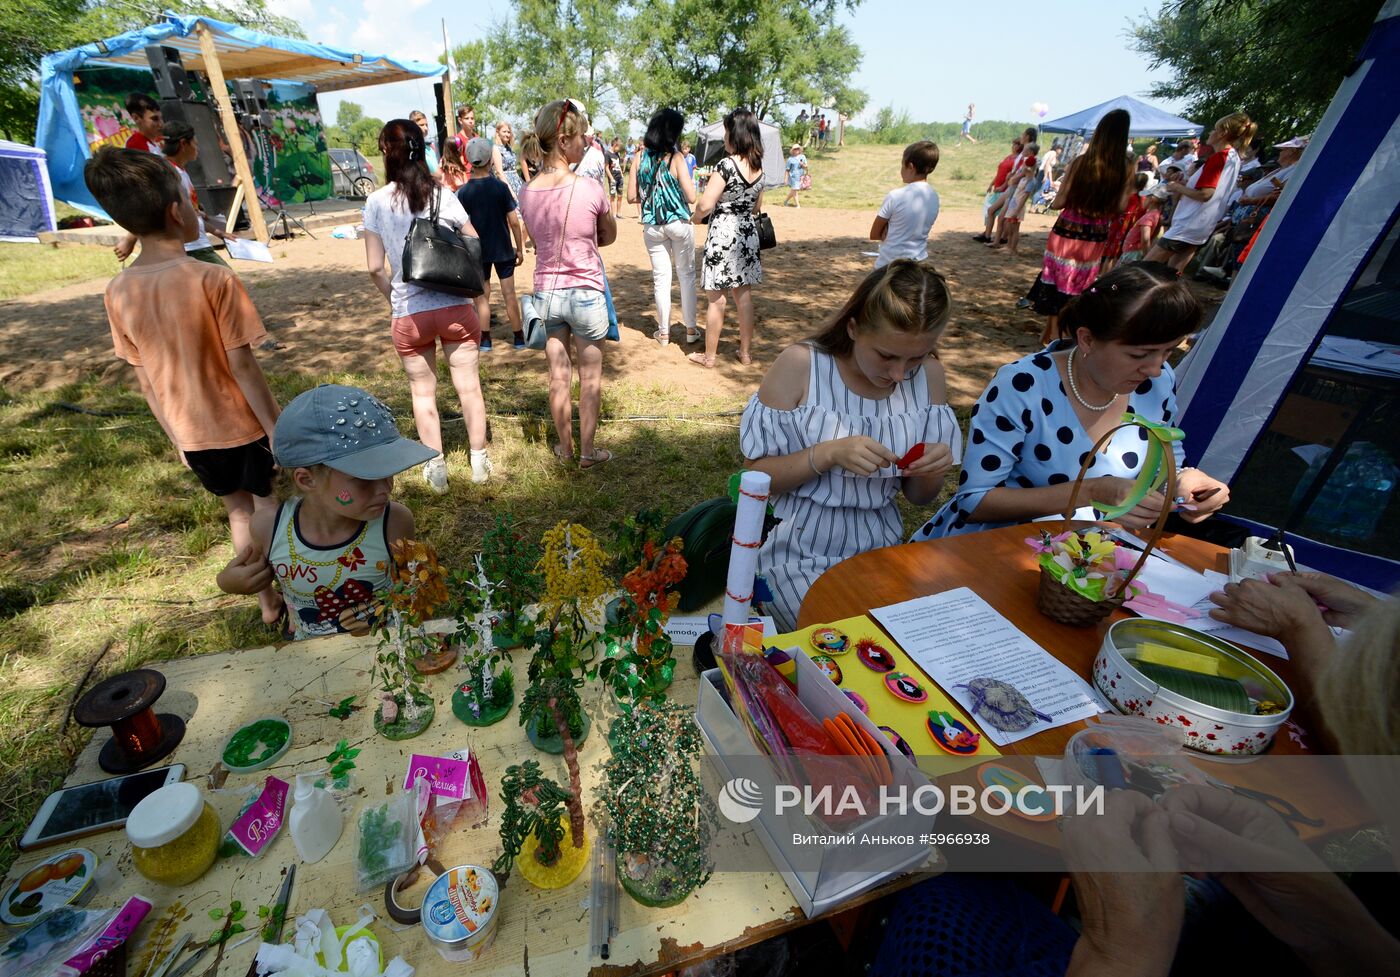 Фестиваль "Лотос-2019" в Приморье   